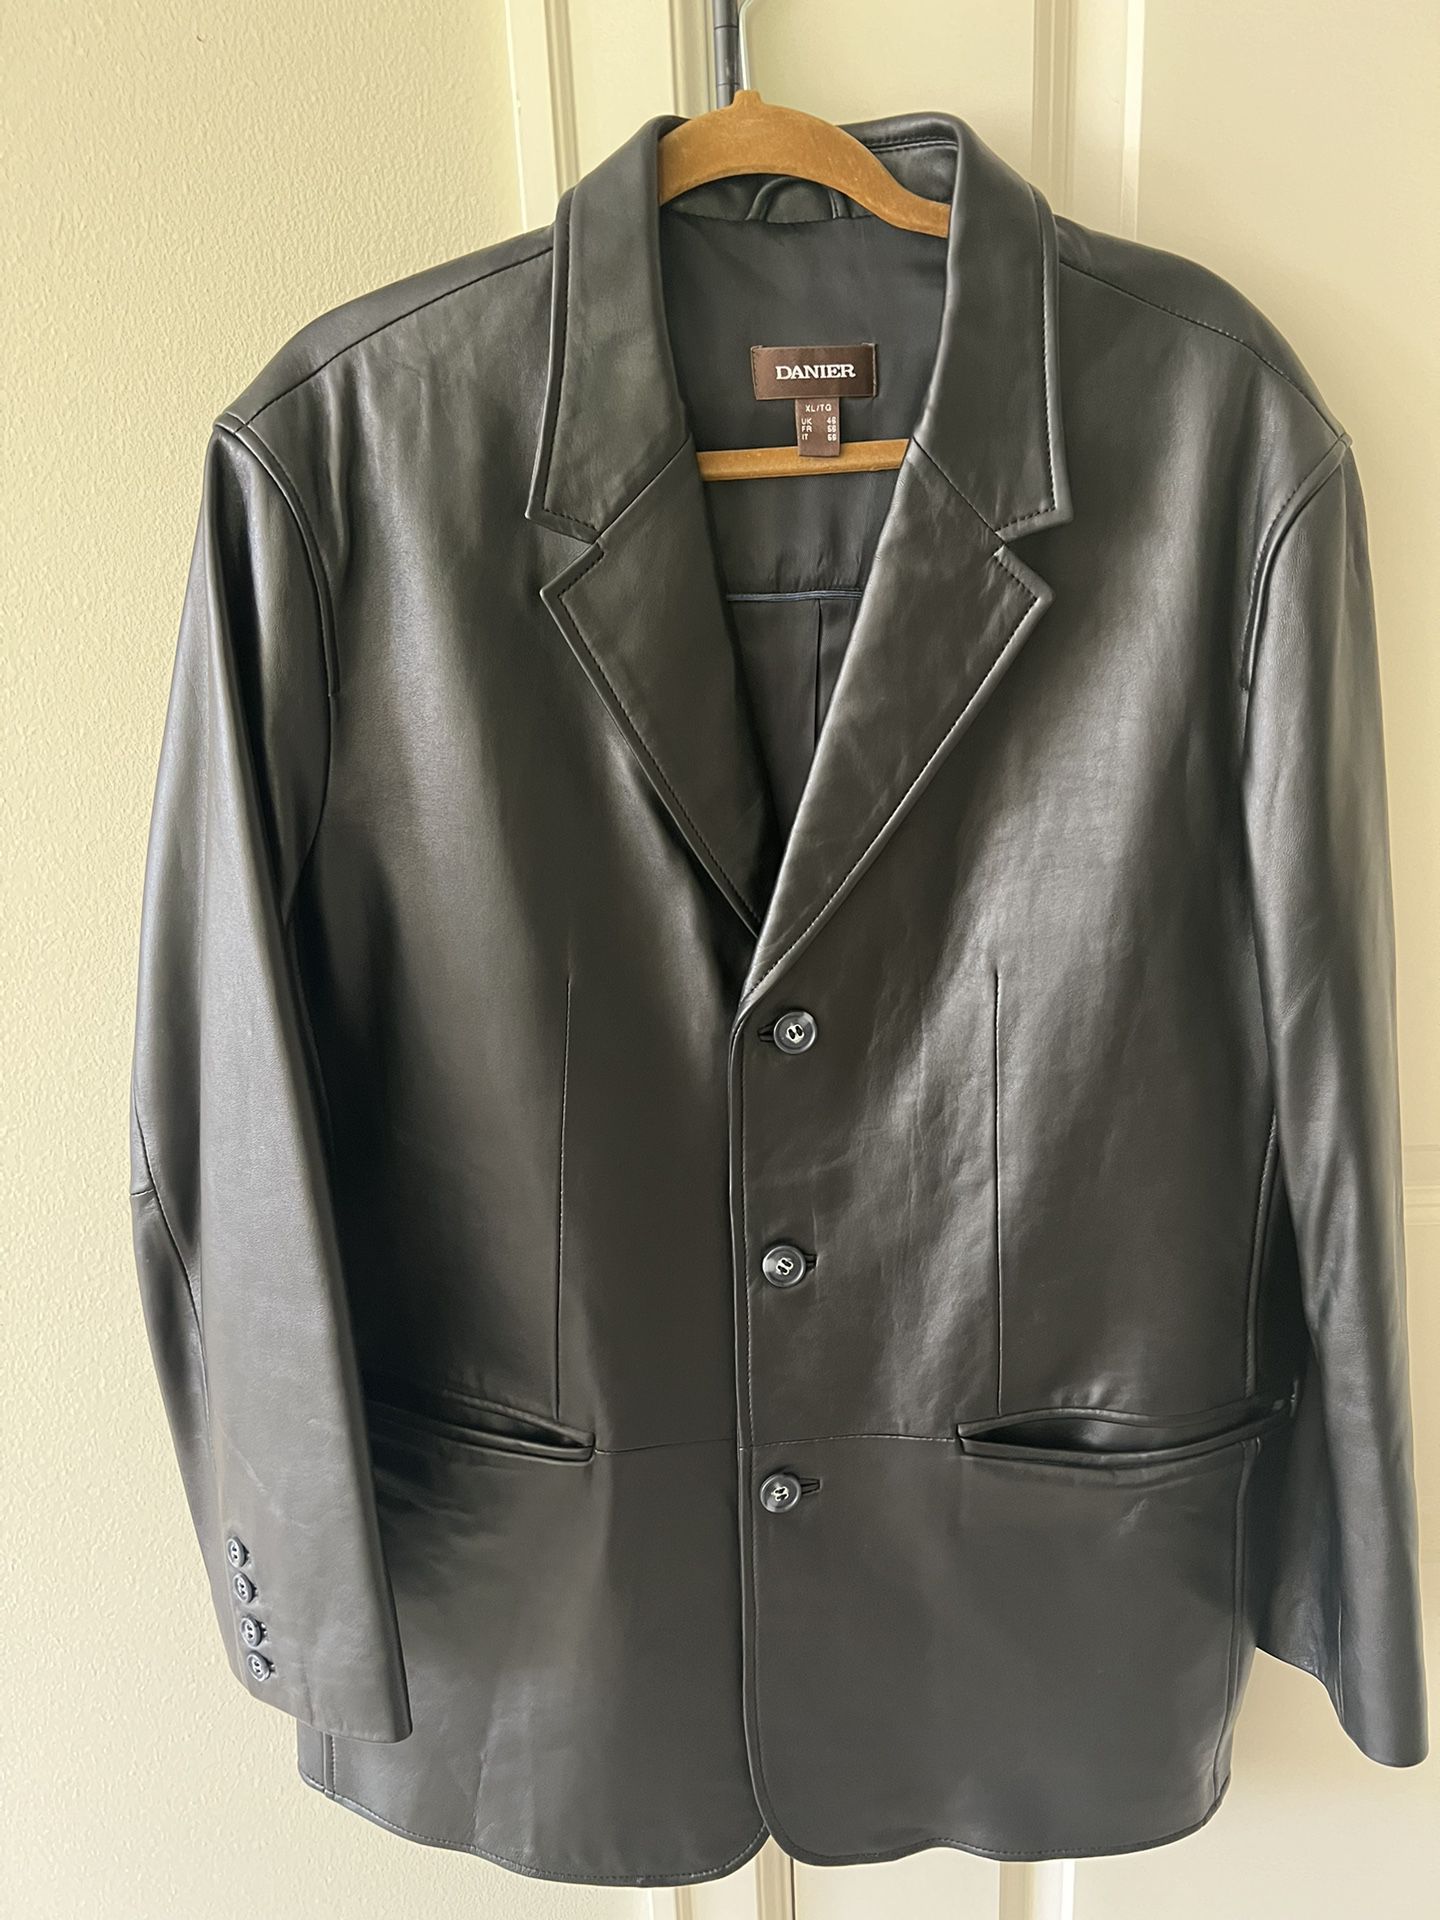 Danier Leather Black Jacket Size Xlarge